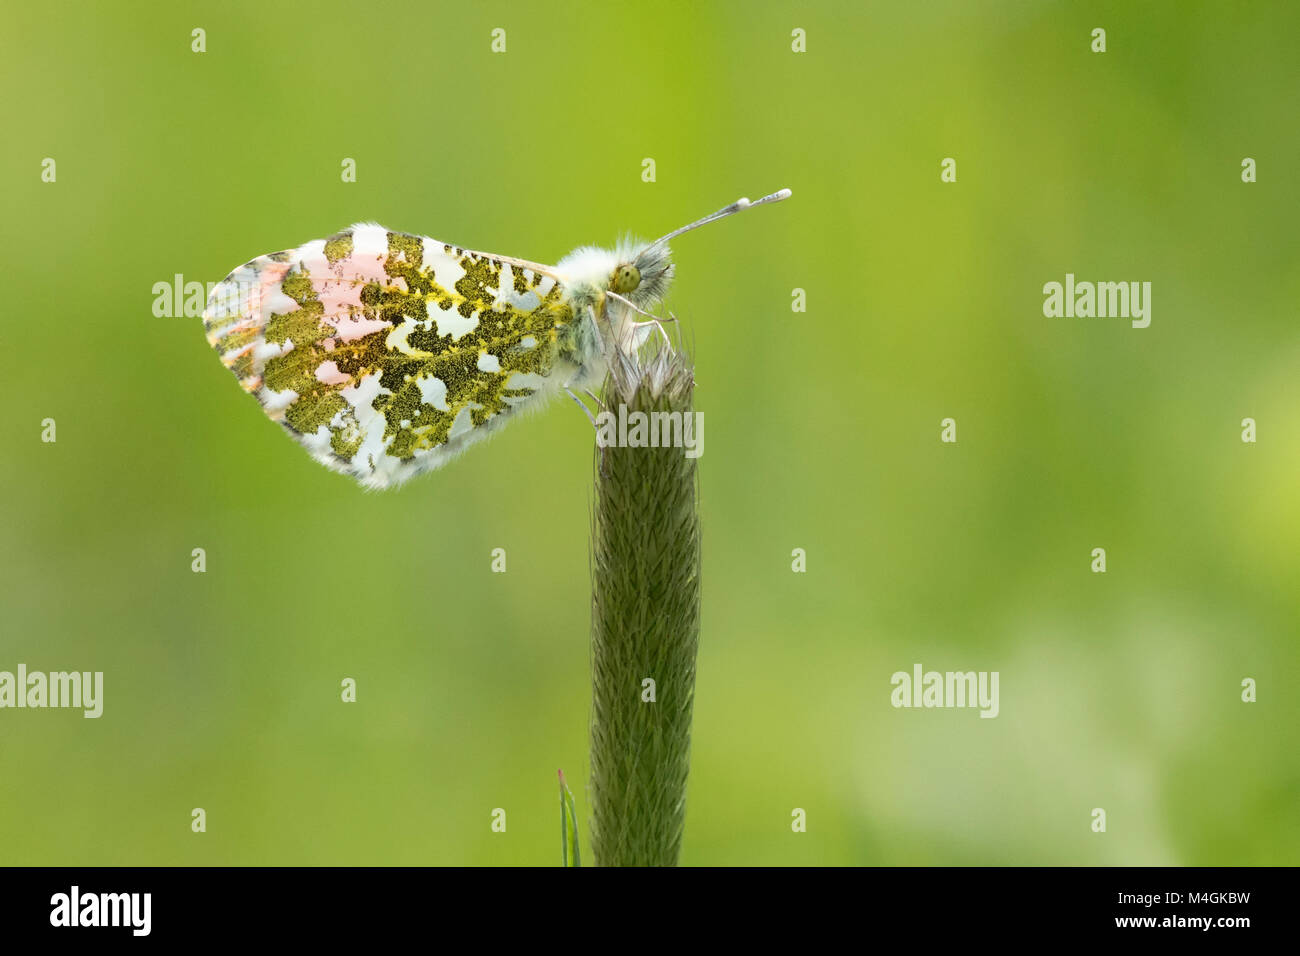 Astuce Orange butterfly Anthocharis cardamines (mâle) avec les ailes fermées et perché sur une tige d'herbe. Tipperary, Irlande. Banque D'Images